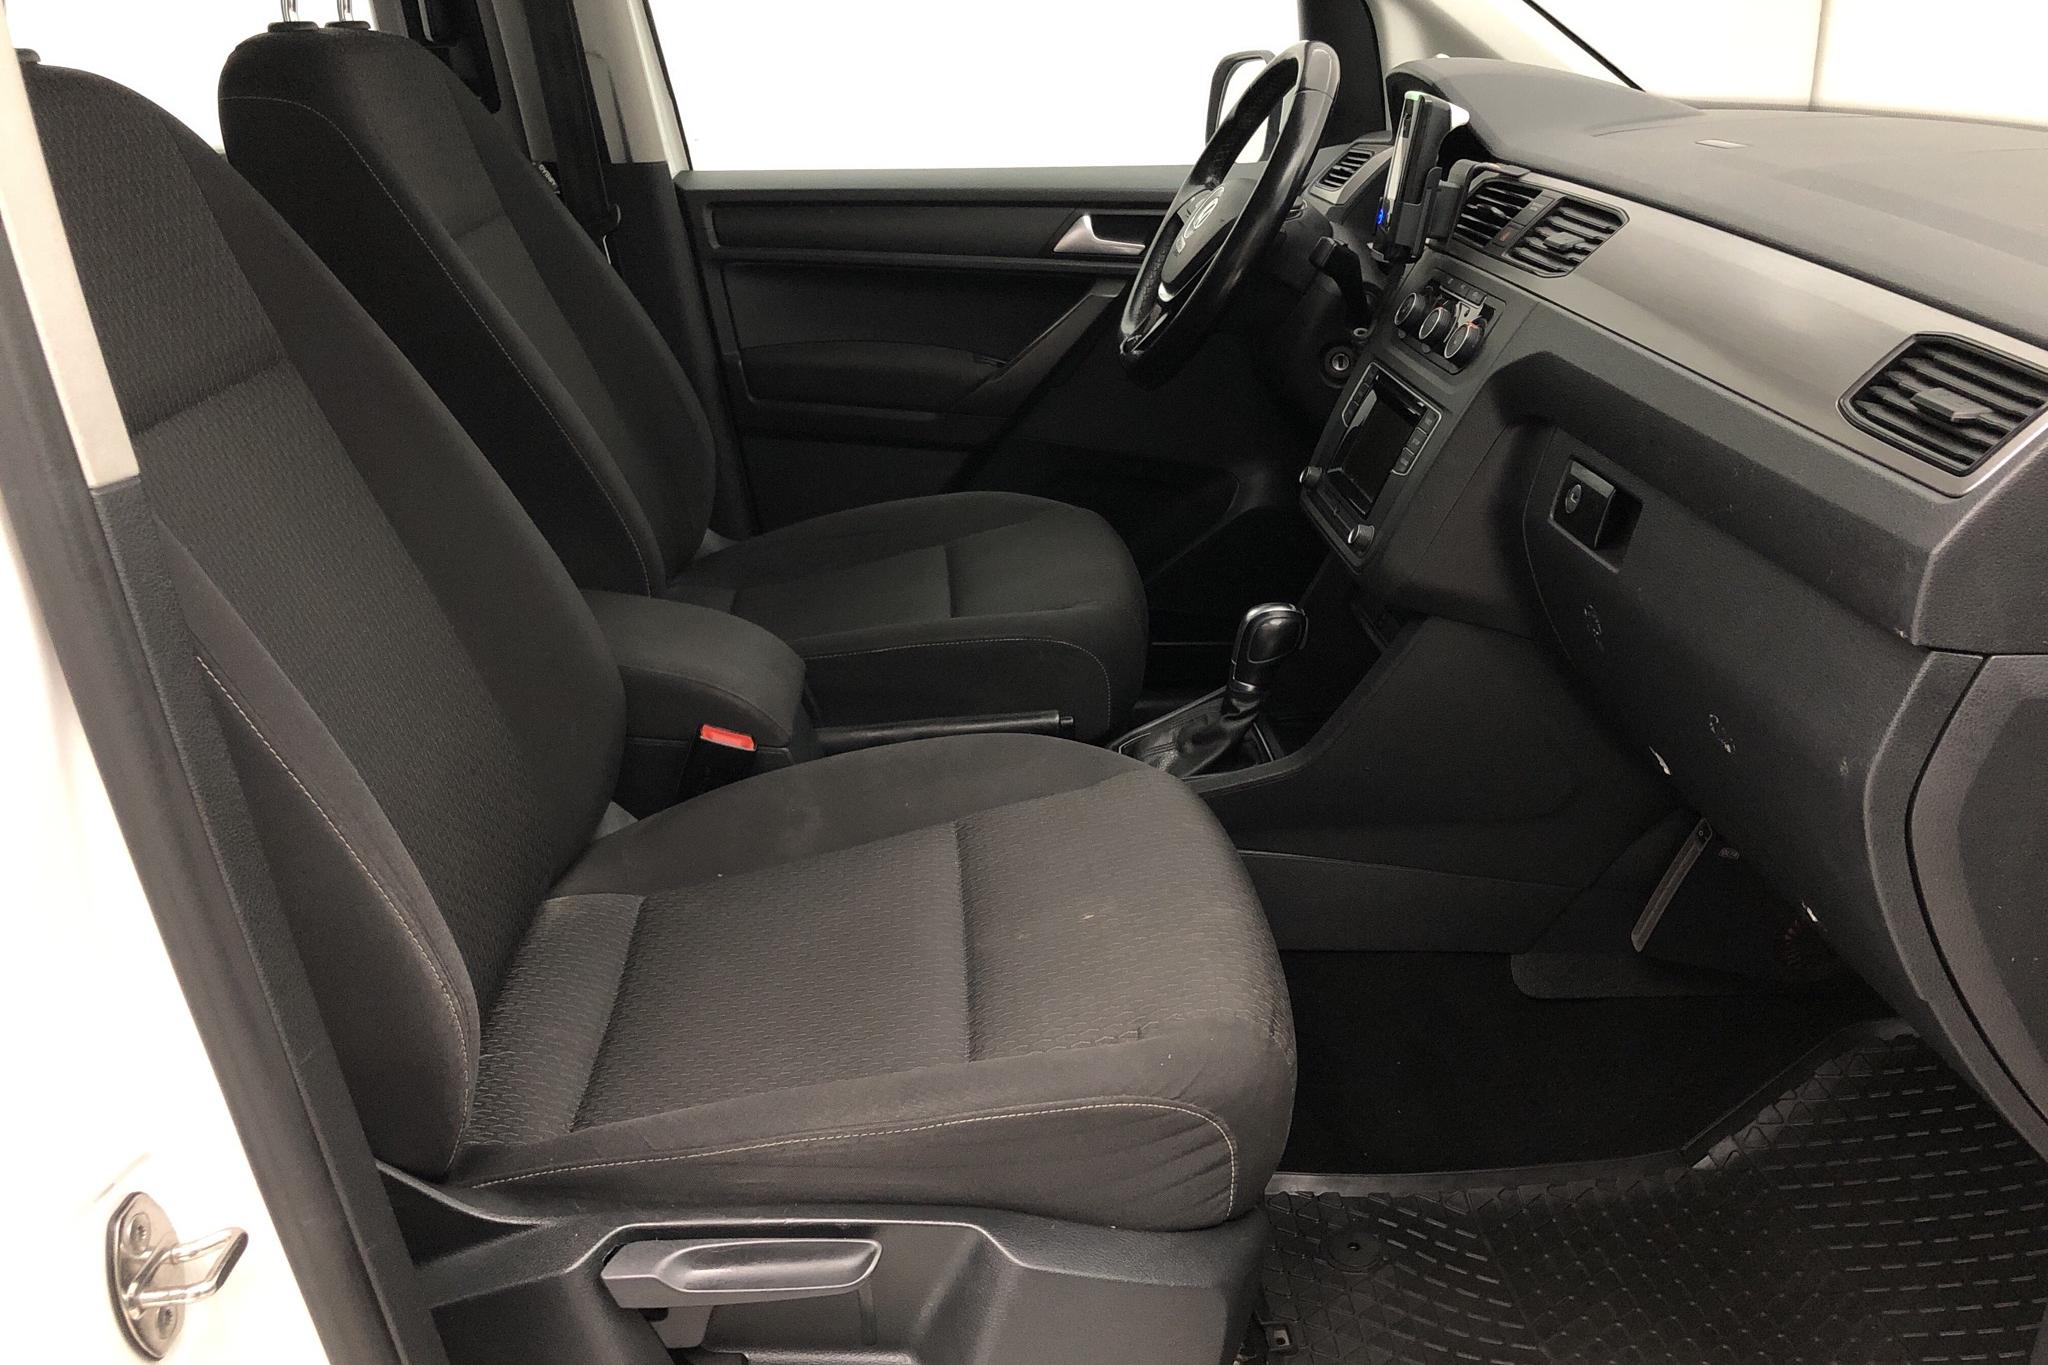 VW Caddy Maxi Life 1.4 TGI (110hk) - 14 127 mil - Automat - vit - 2017